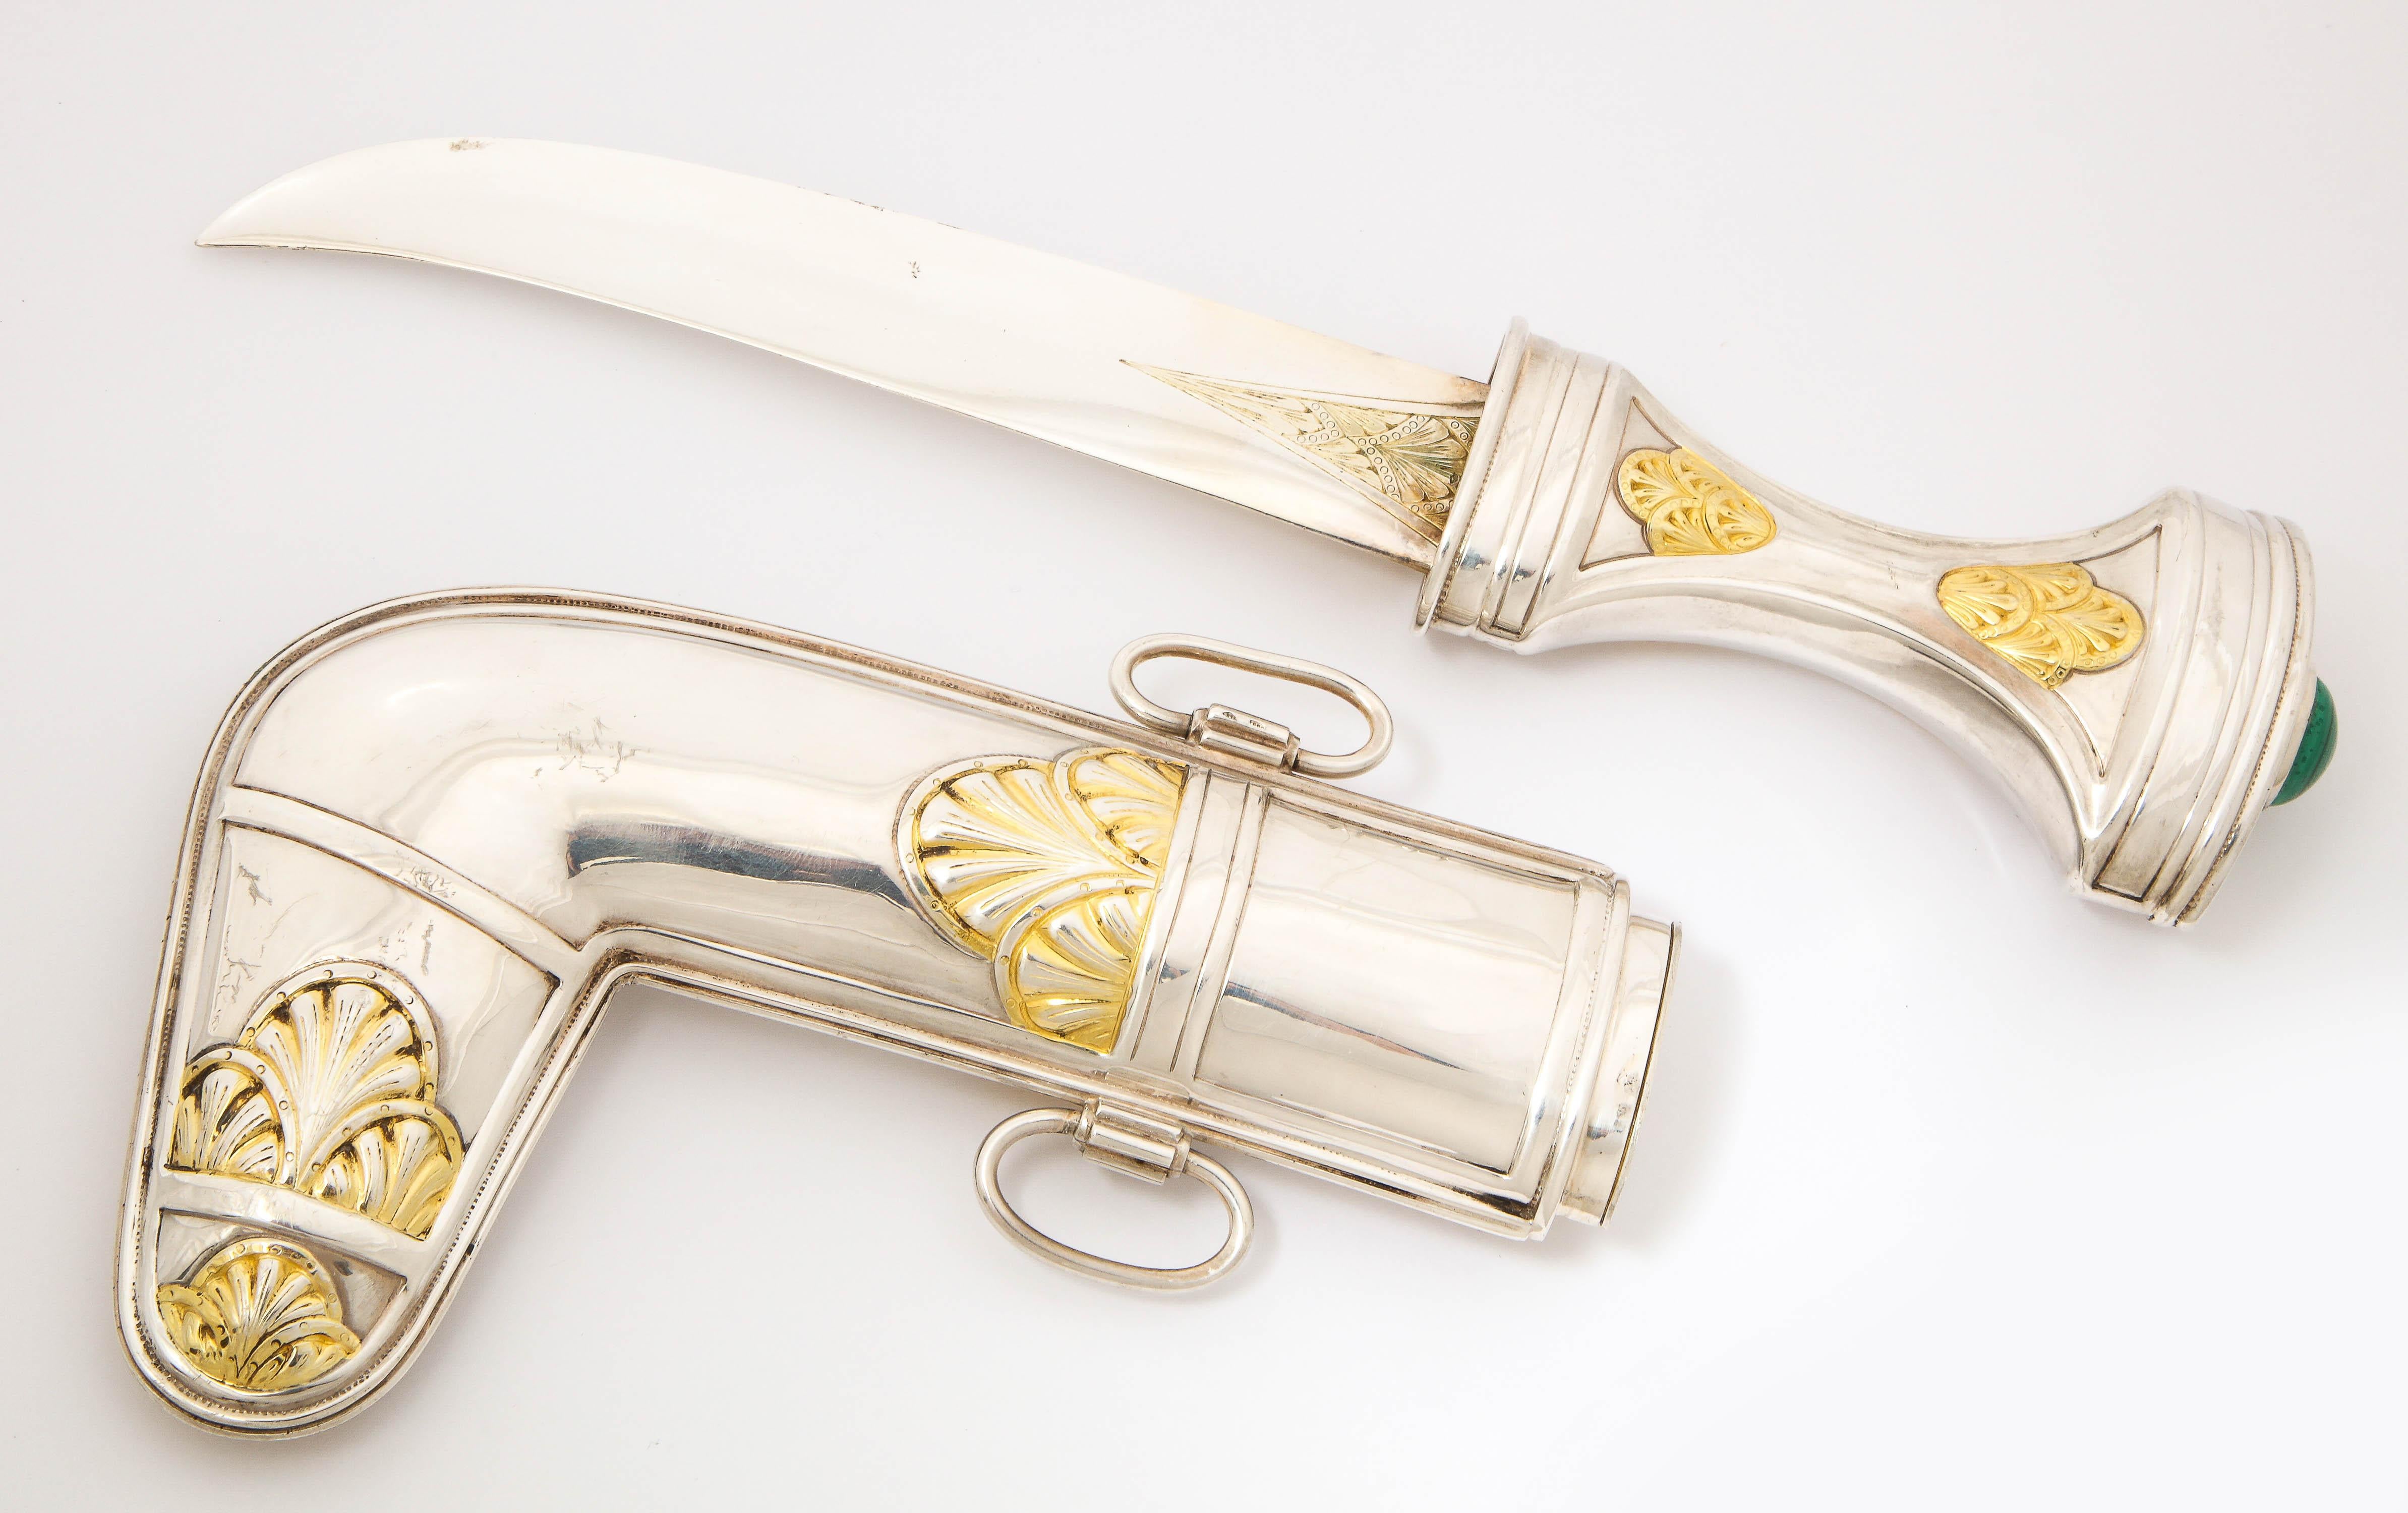 Royal Saudi Arabian Silver and Silver-Gilt Jambiya Khanjar Dagger, Malachite 3